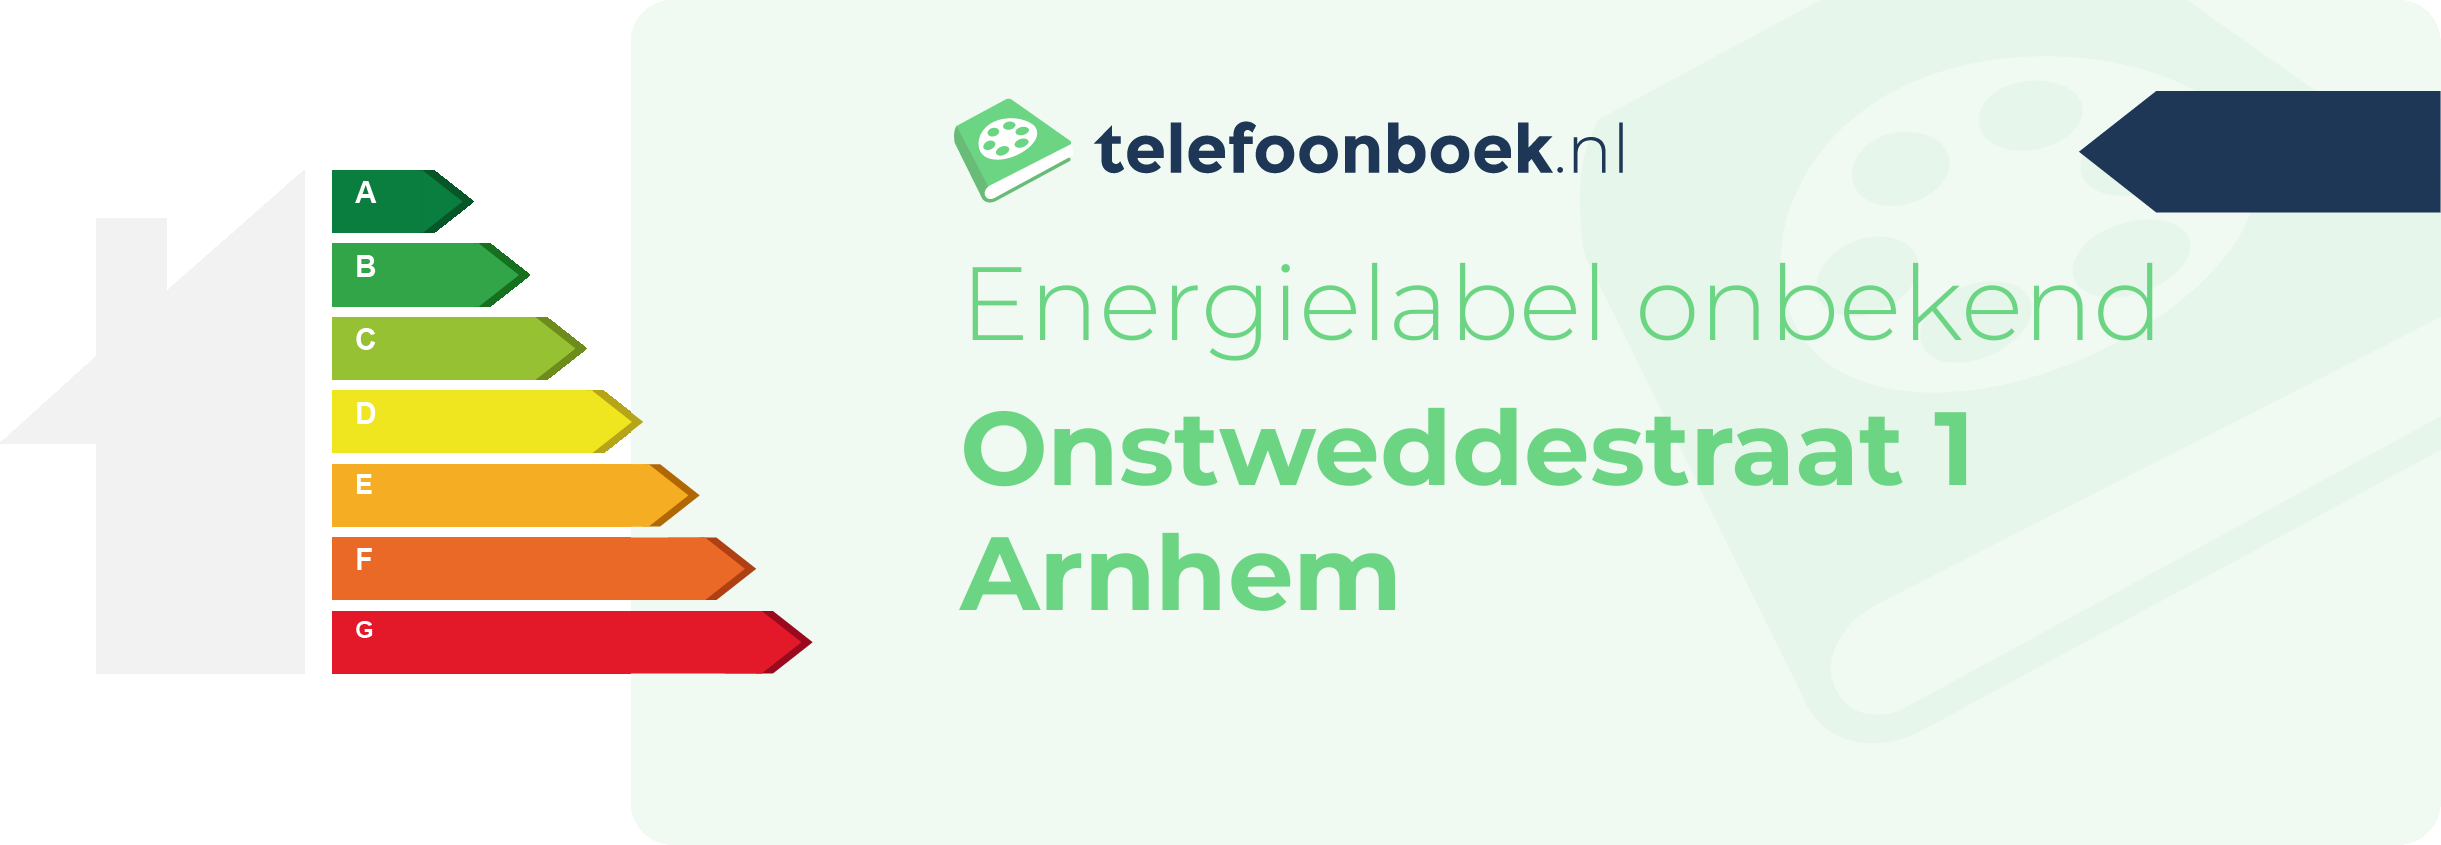 Energielabel Onstweddestraat 1 Arnhem